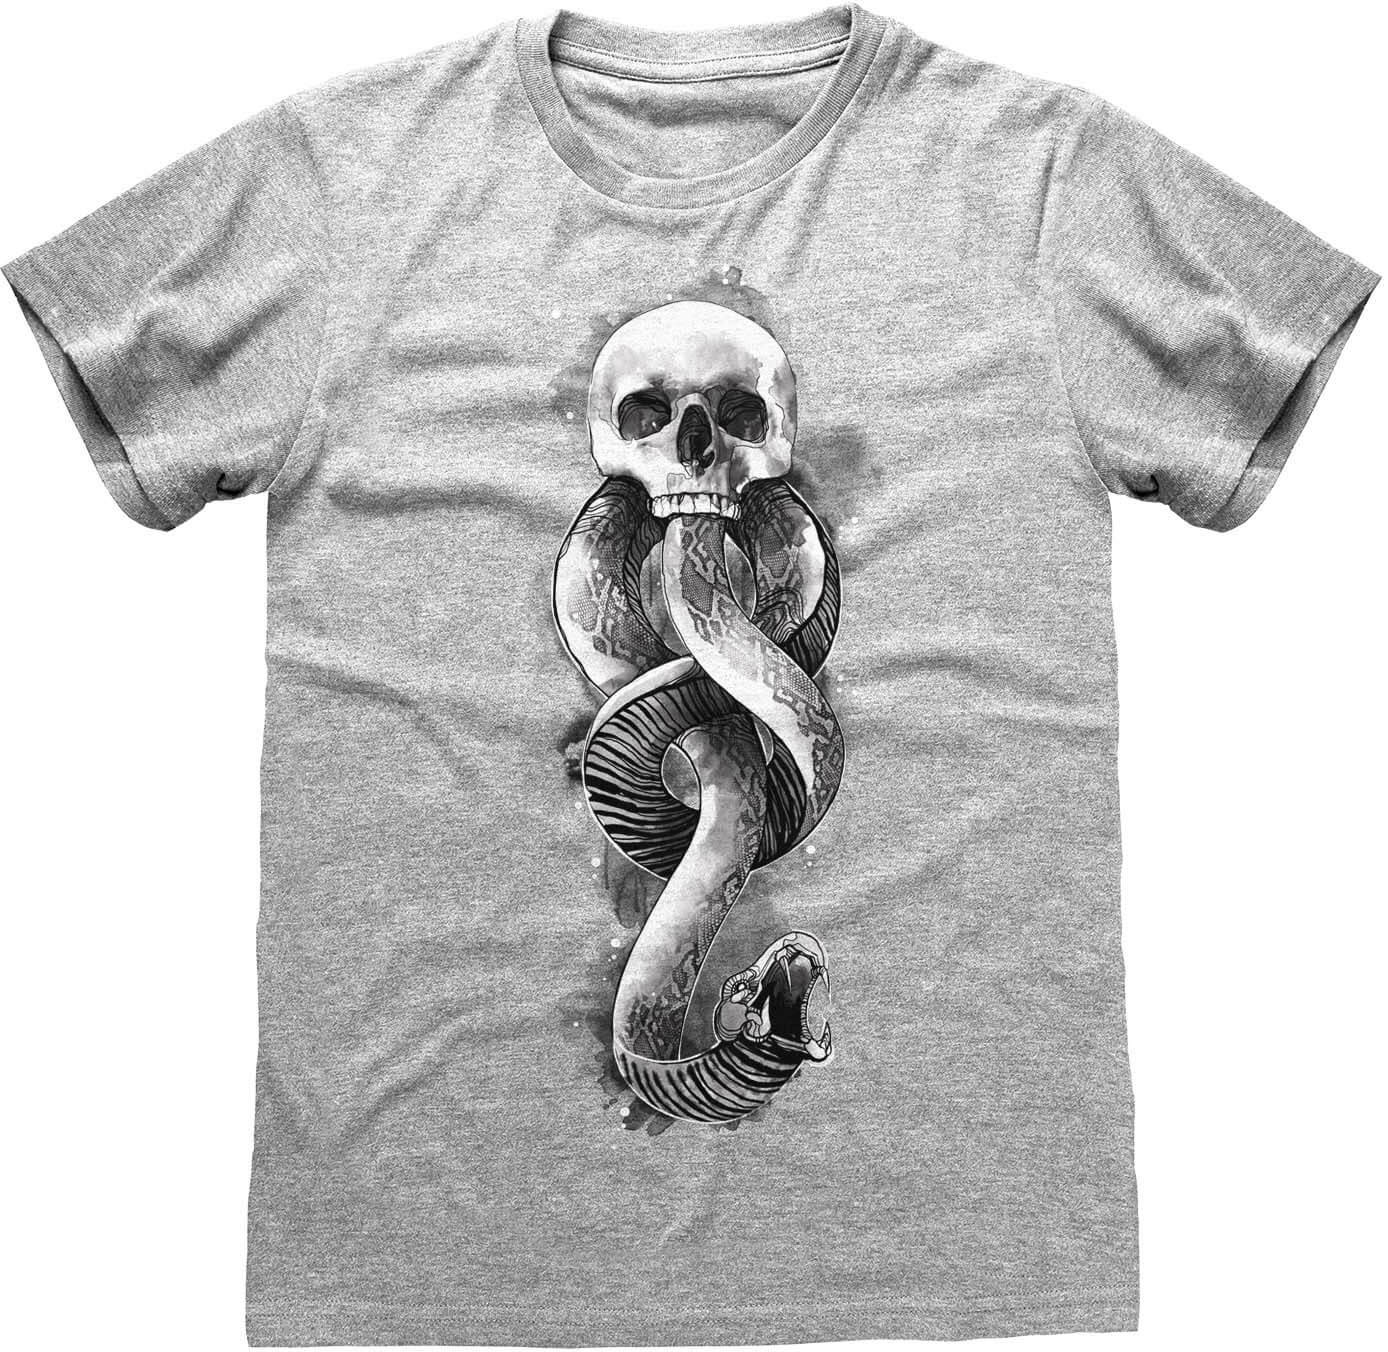 Harry Potter - Dark Arts Snake T-Shirt